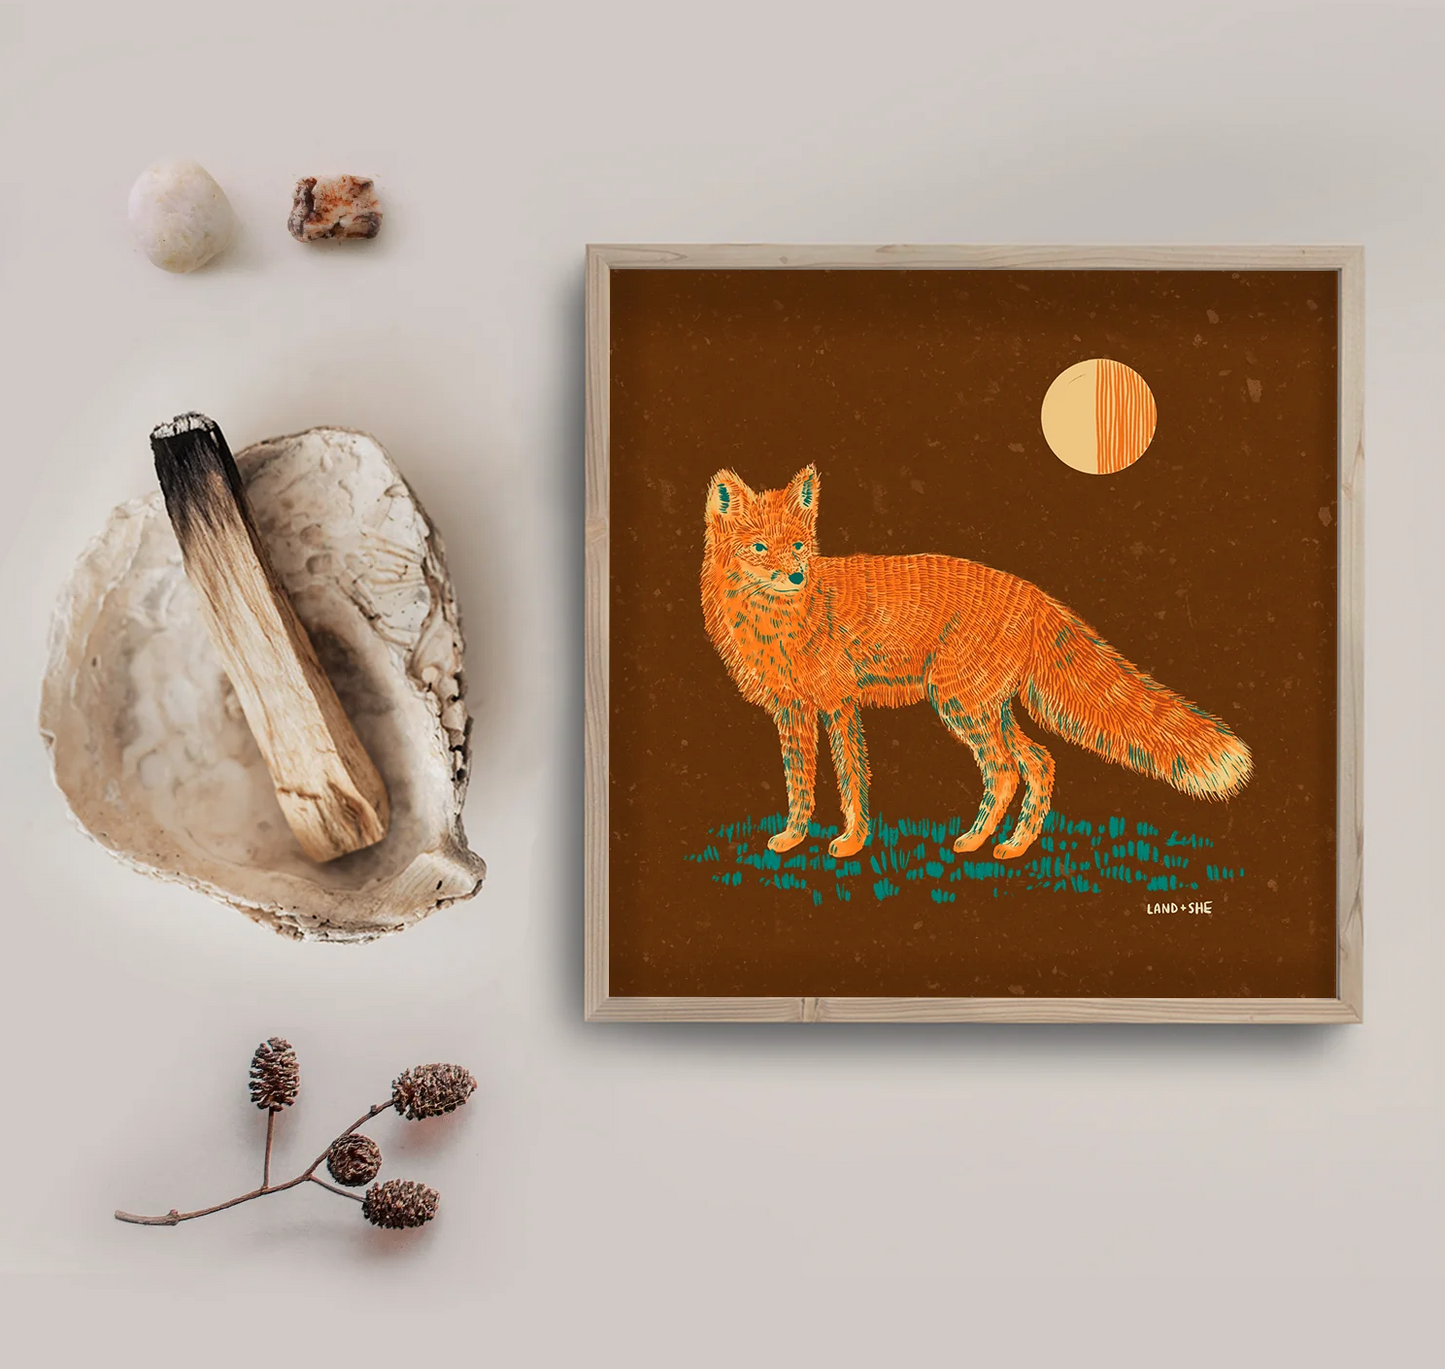 8" x 8" Moonlit Fox Print